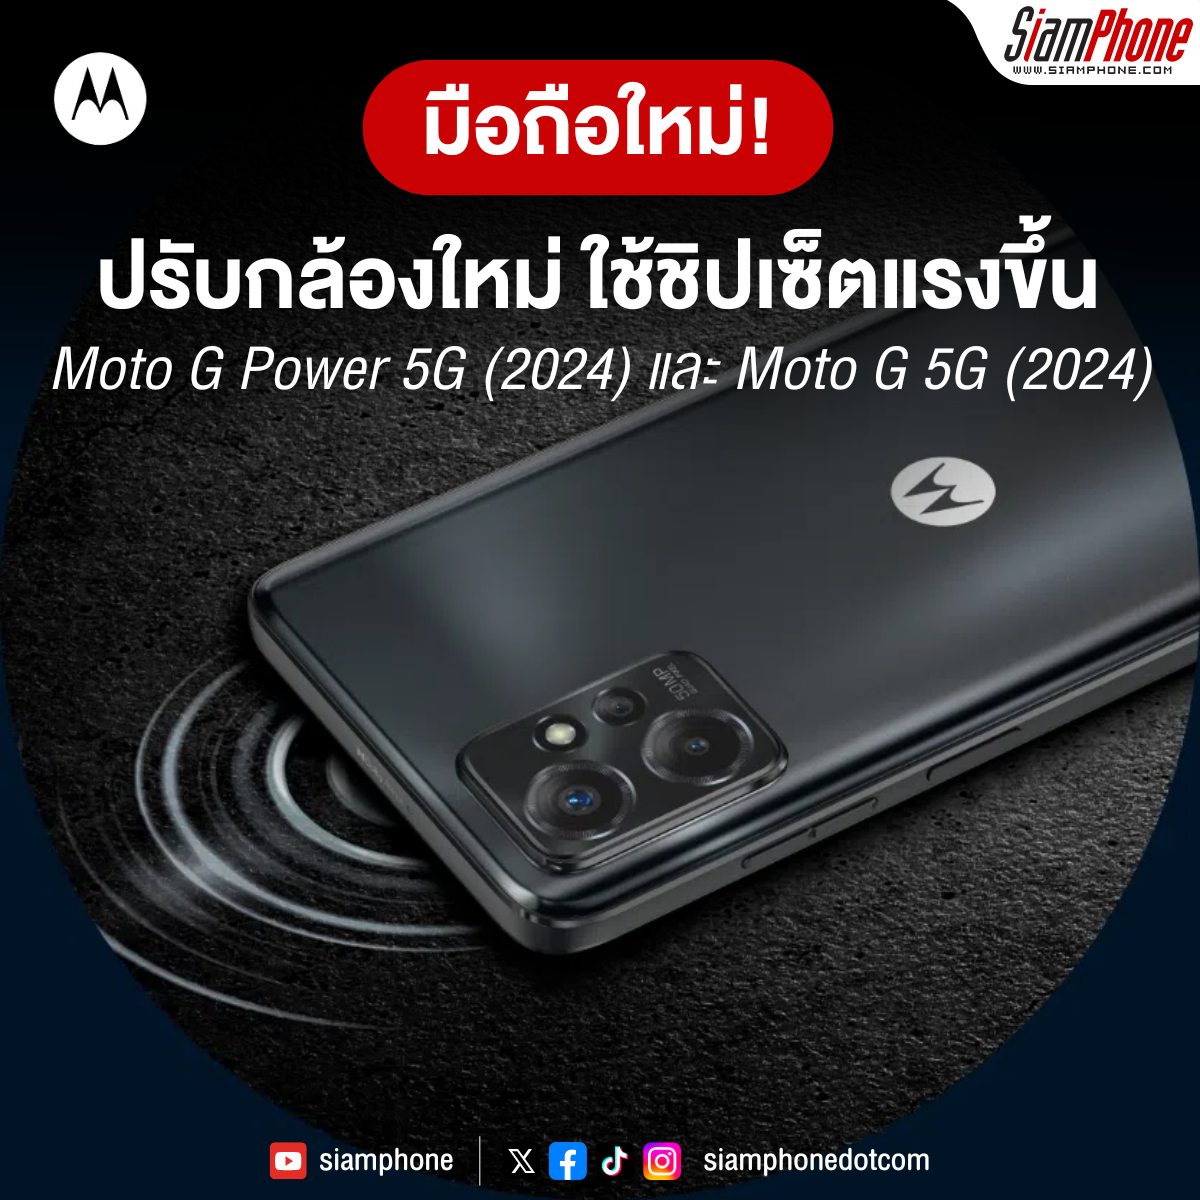 Moto G Power 5G (2024) และ Moto G 5G (2024) ปรับกล้องใหม่ ใช้ชิปเซ็ตแรงขึ้น